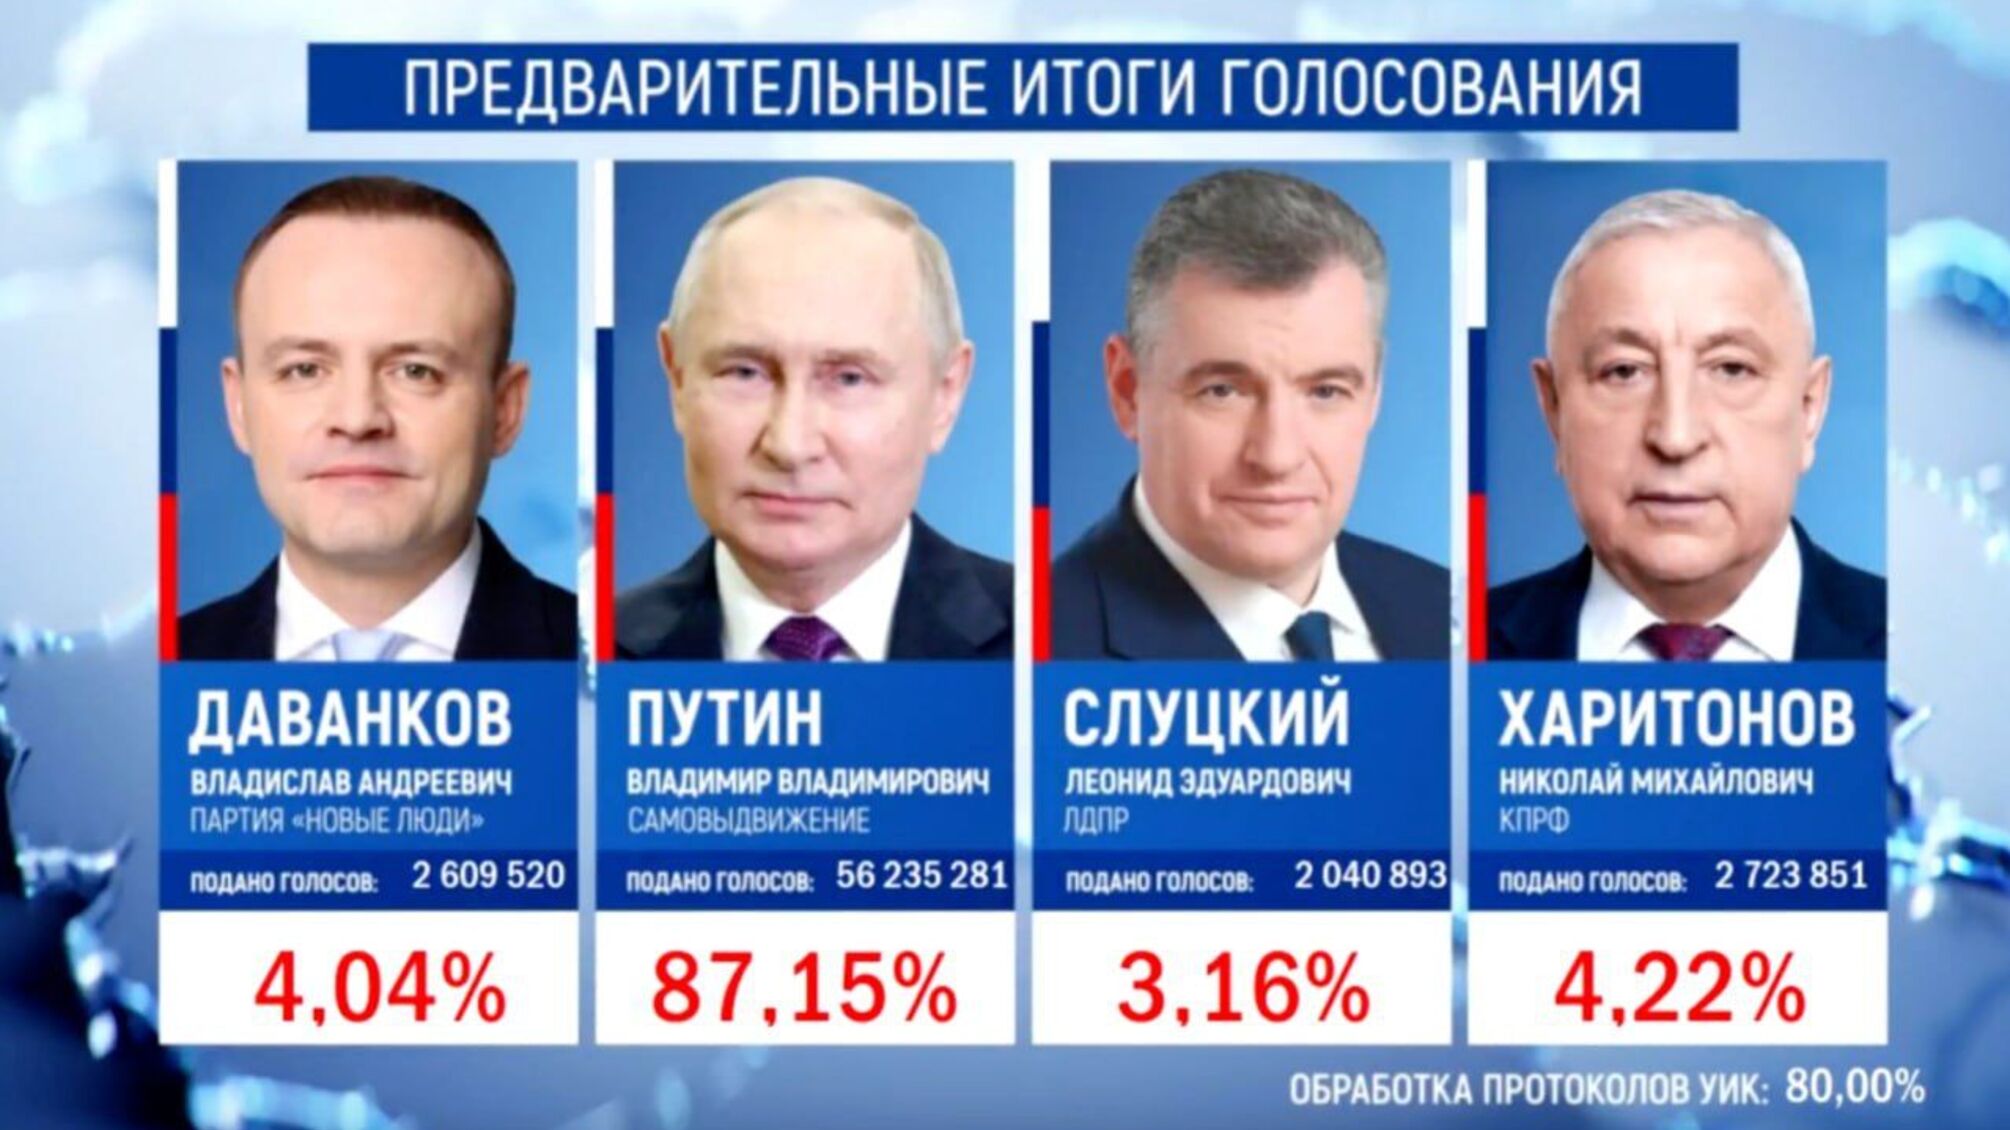 Путин набрал 85,13% голосов после обработки 100% протоколов на выборах, – росСМИ